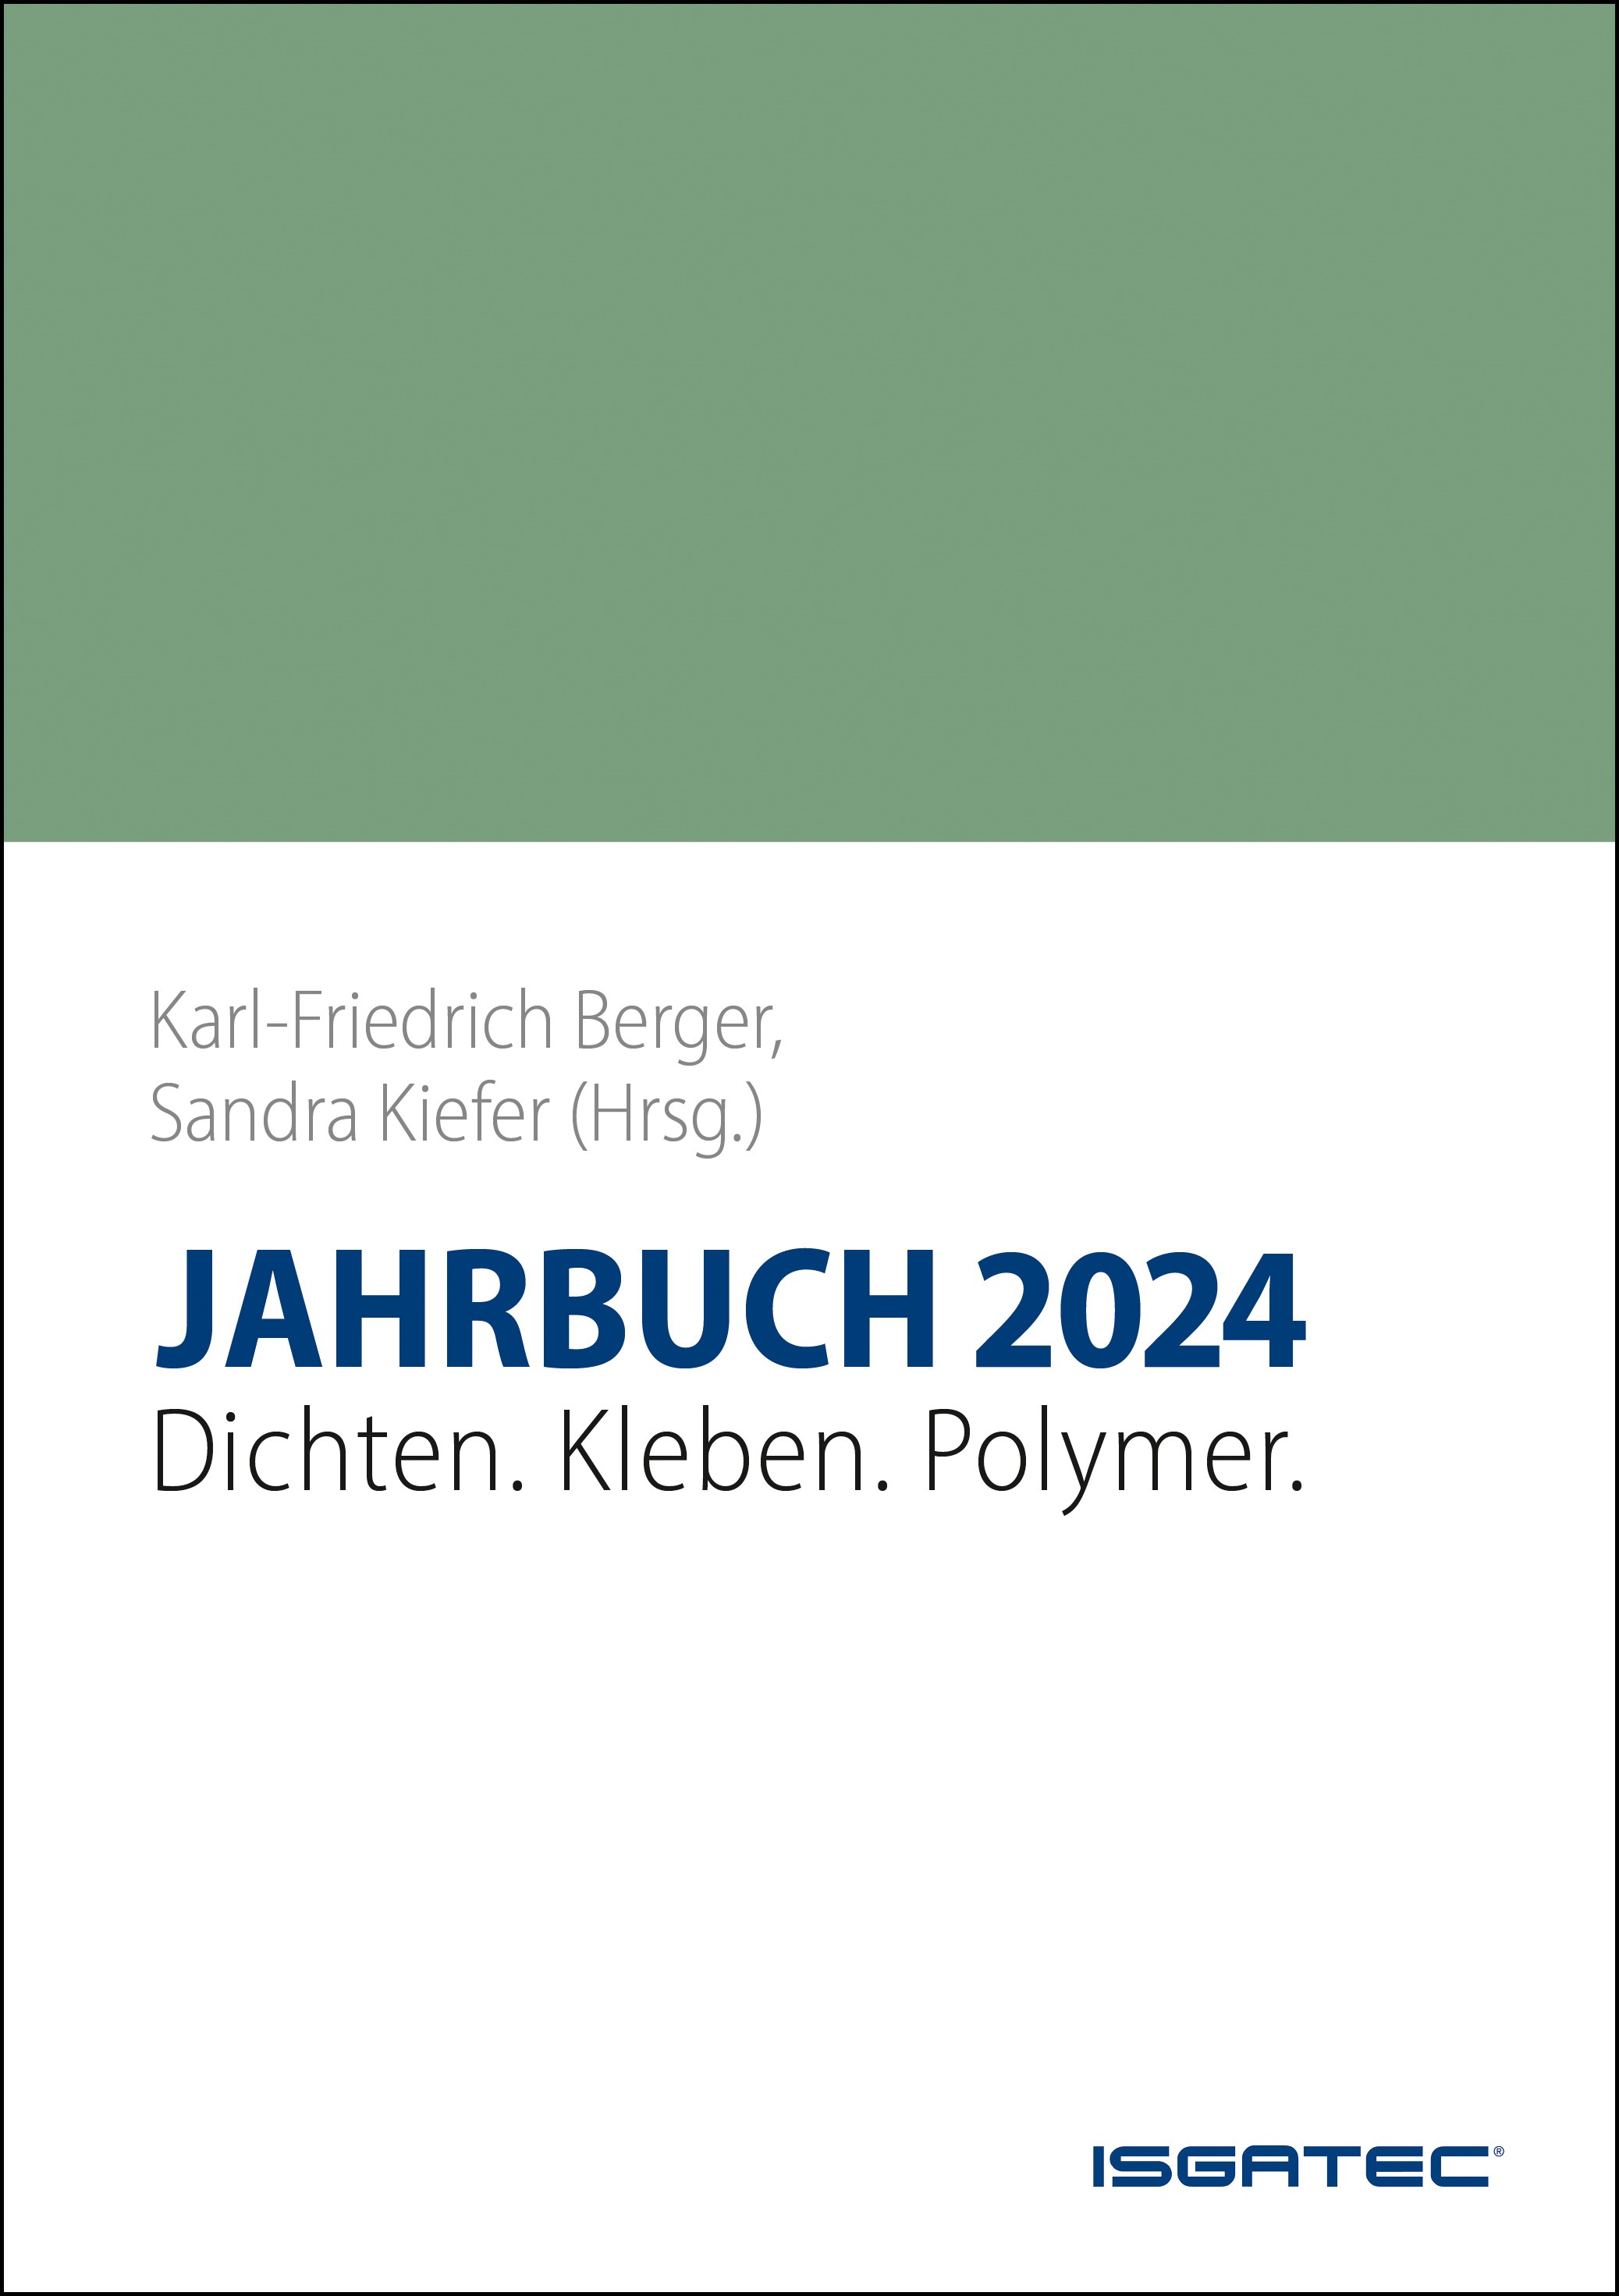 JAHRBUCH 2024 Dichten. Kleben. Polymer.